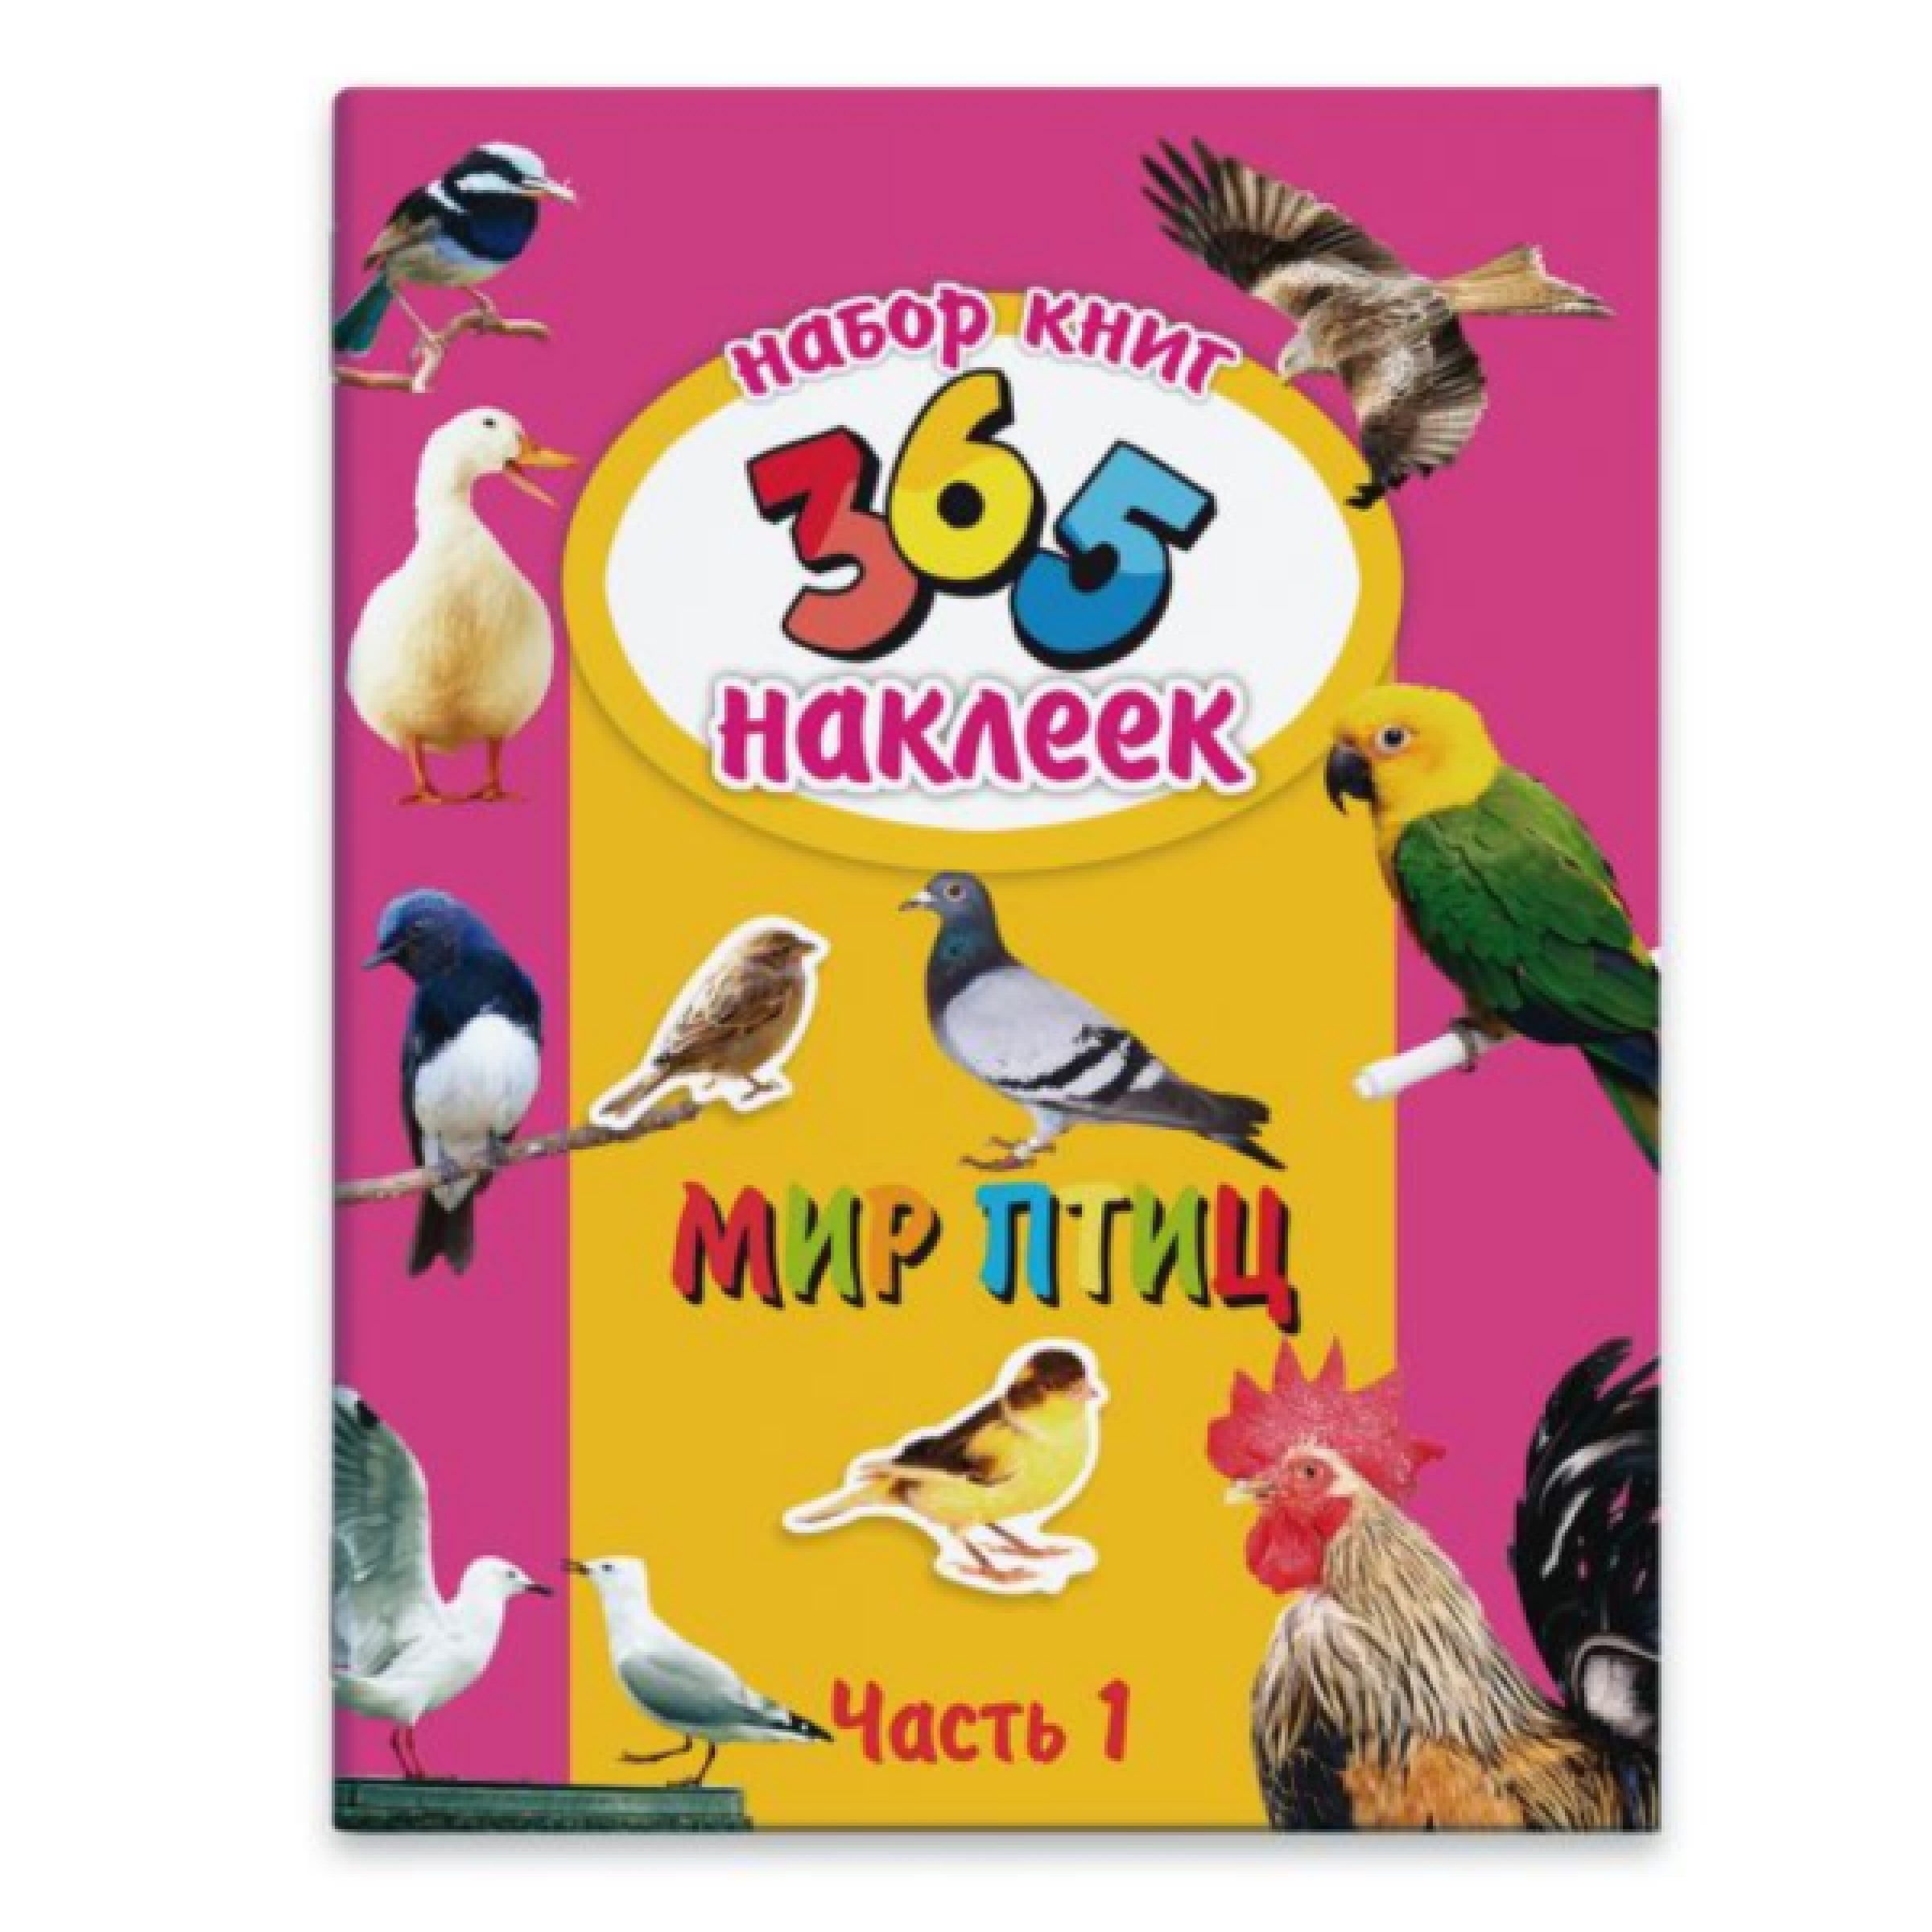 Набор из двух книг 365 наклеек + Мир птиц, 212х280 мм